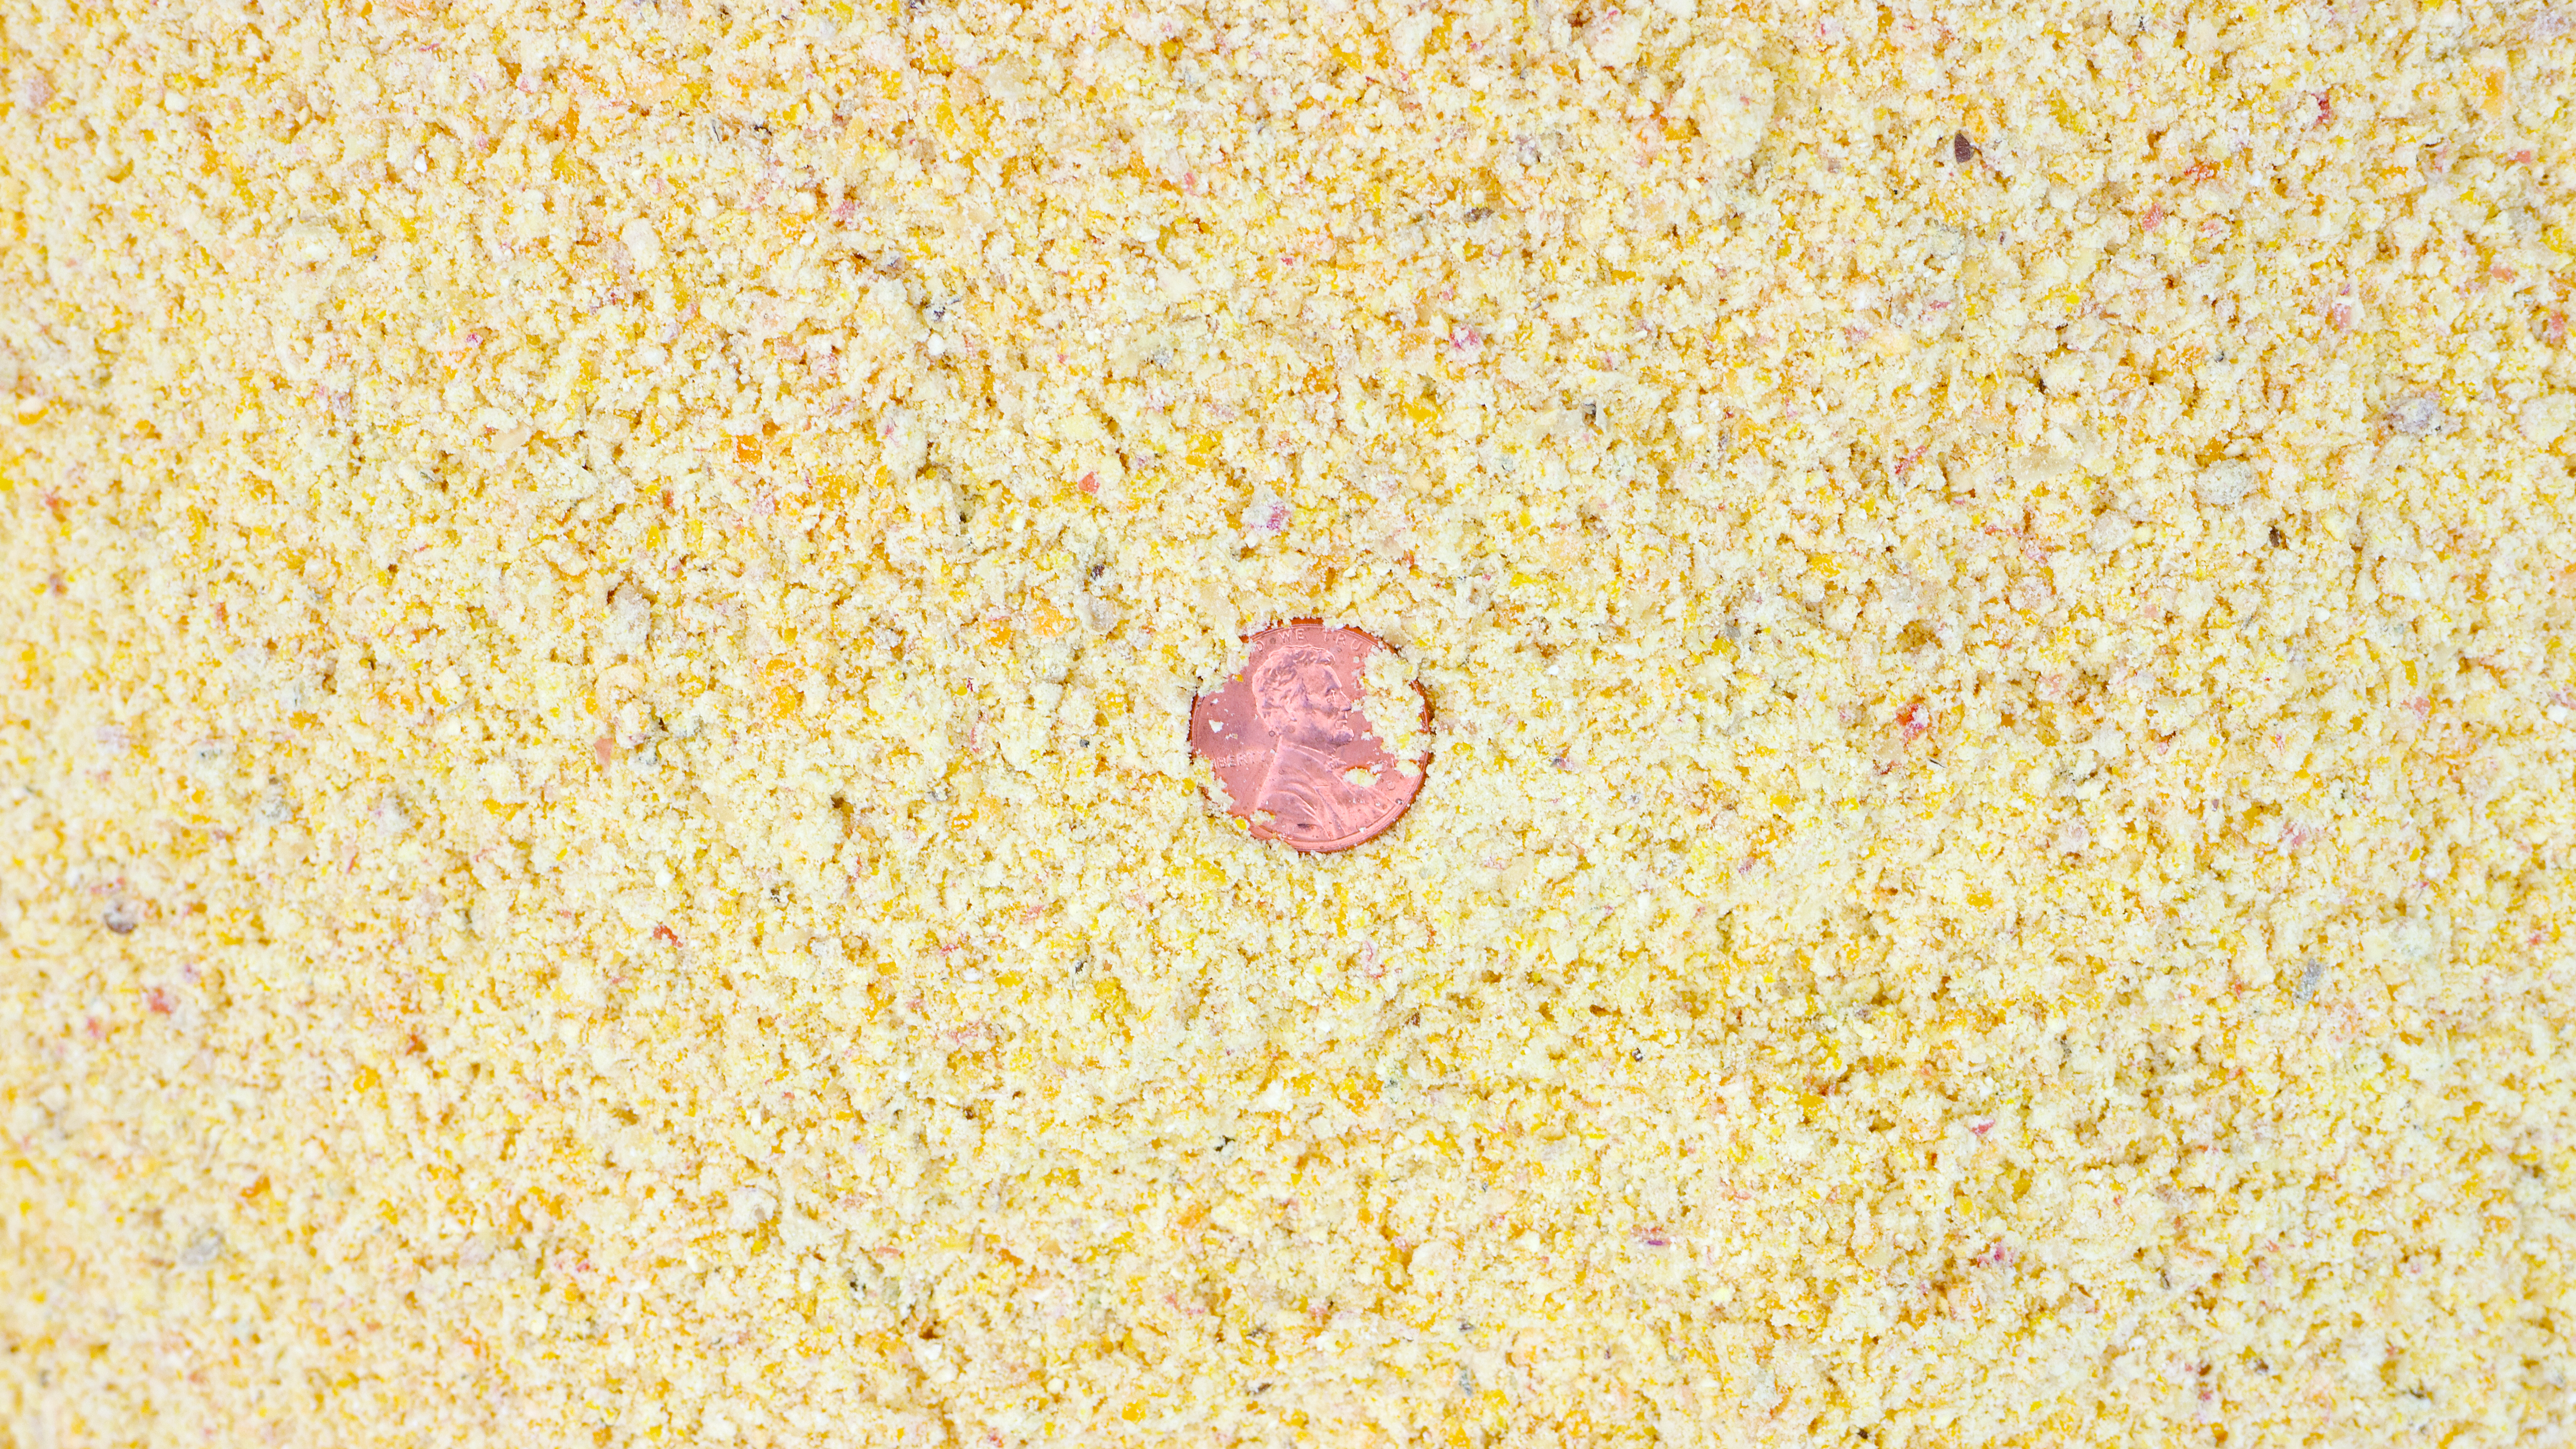 penny in shelled corn